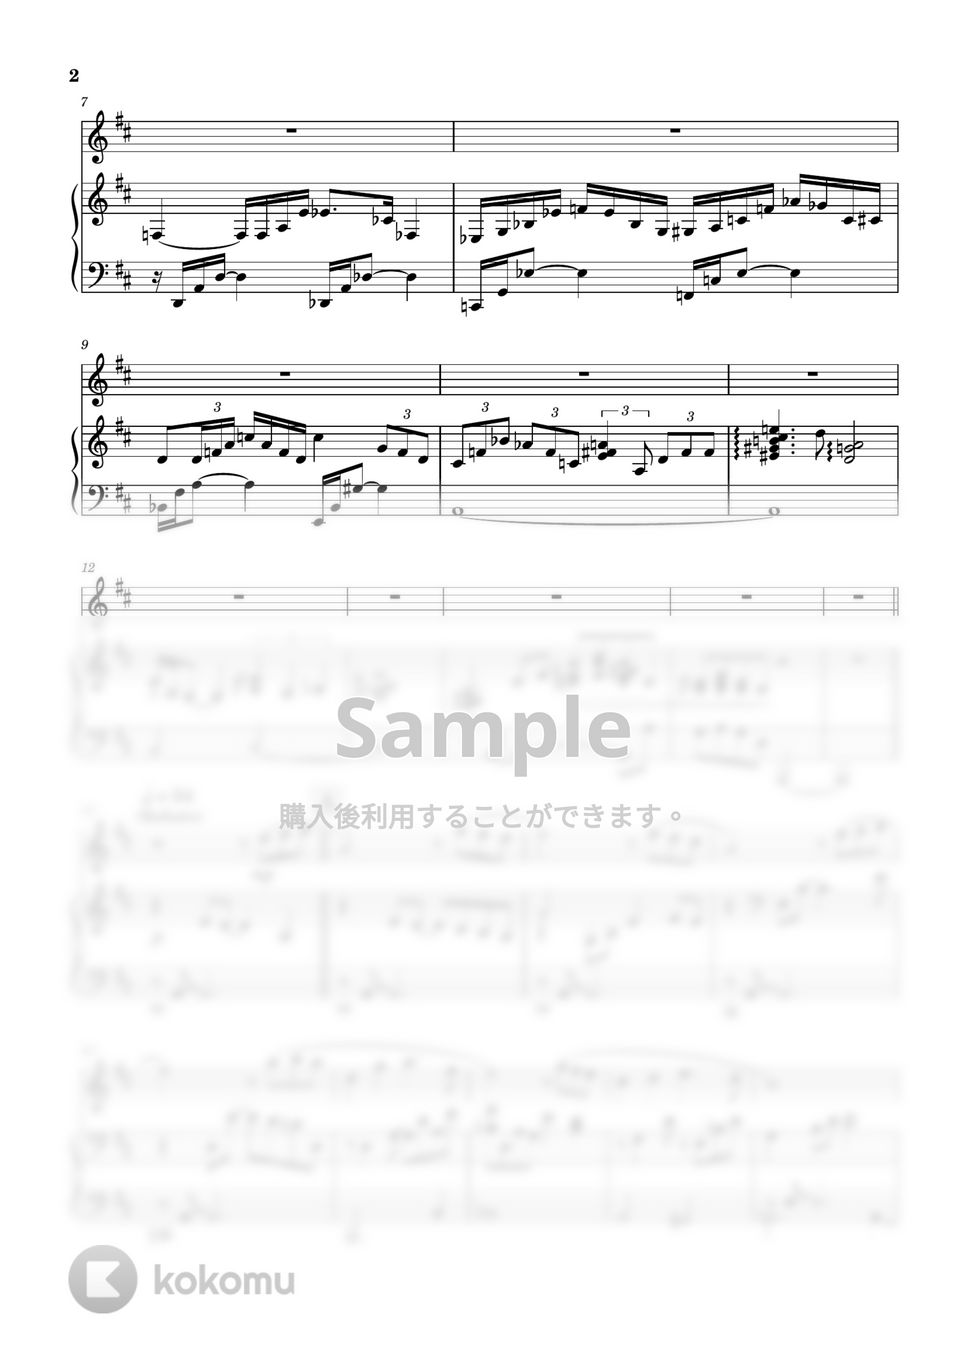 映画「海の上のピアニスト」より / Legend of 1900 - Ennio Morricone - 愛を奏でて - Playing Love (フルート&ピアノ伴奏) by PiaFlu